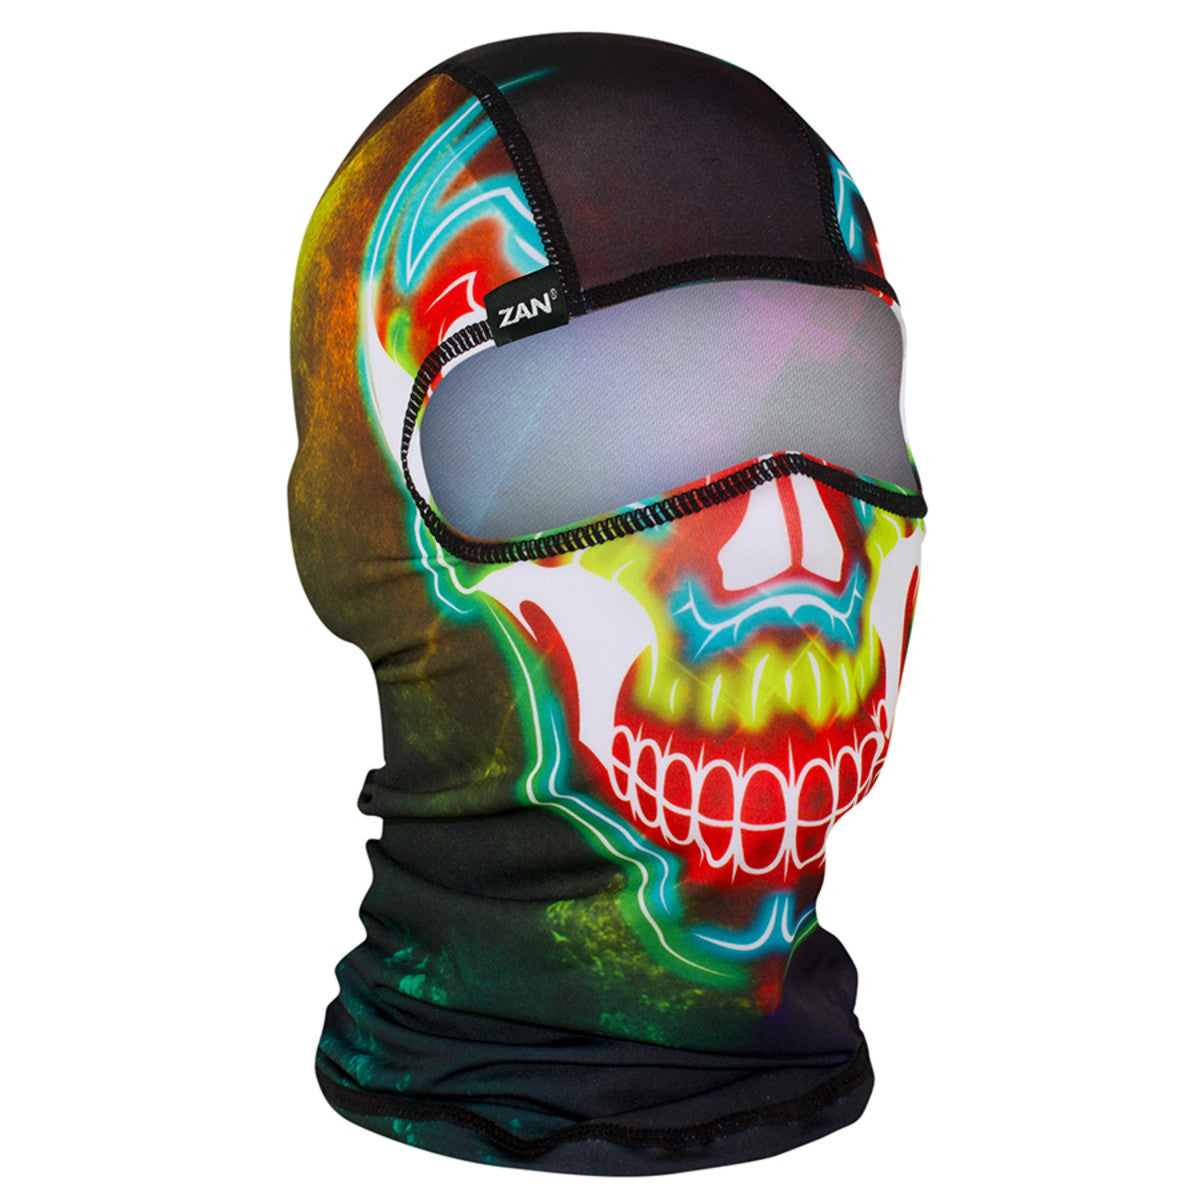 Zanheadgear Polyester Electric Skull Balaclava Face Mask